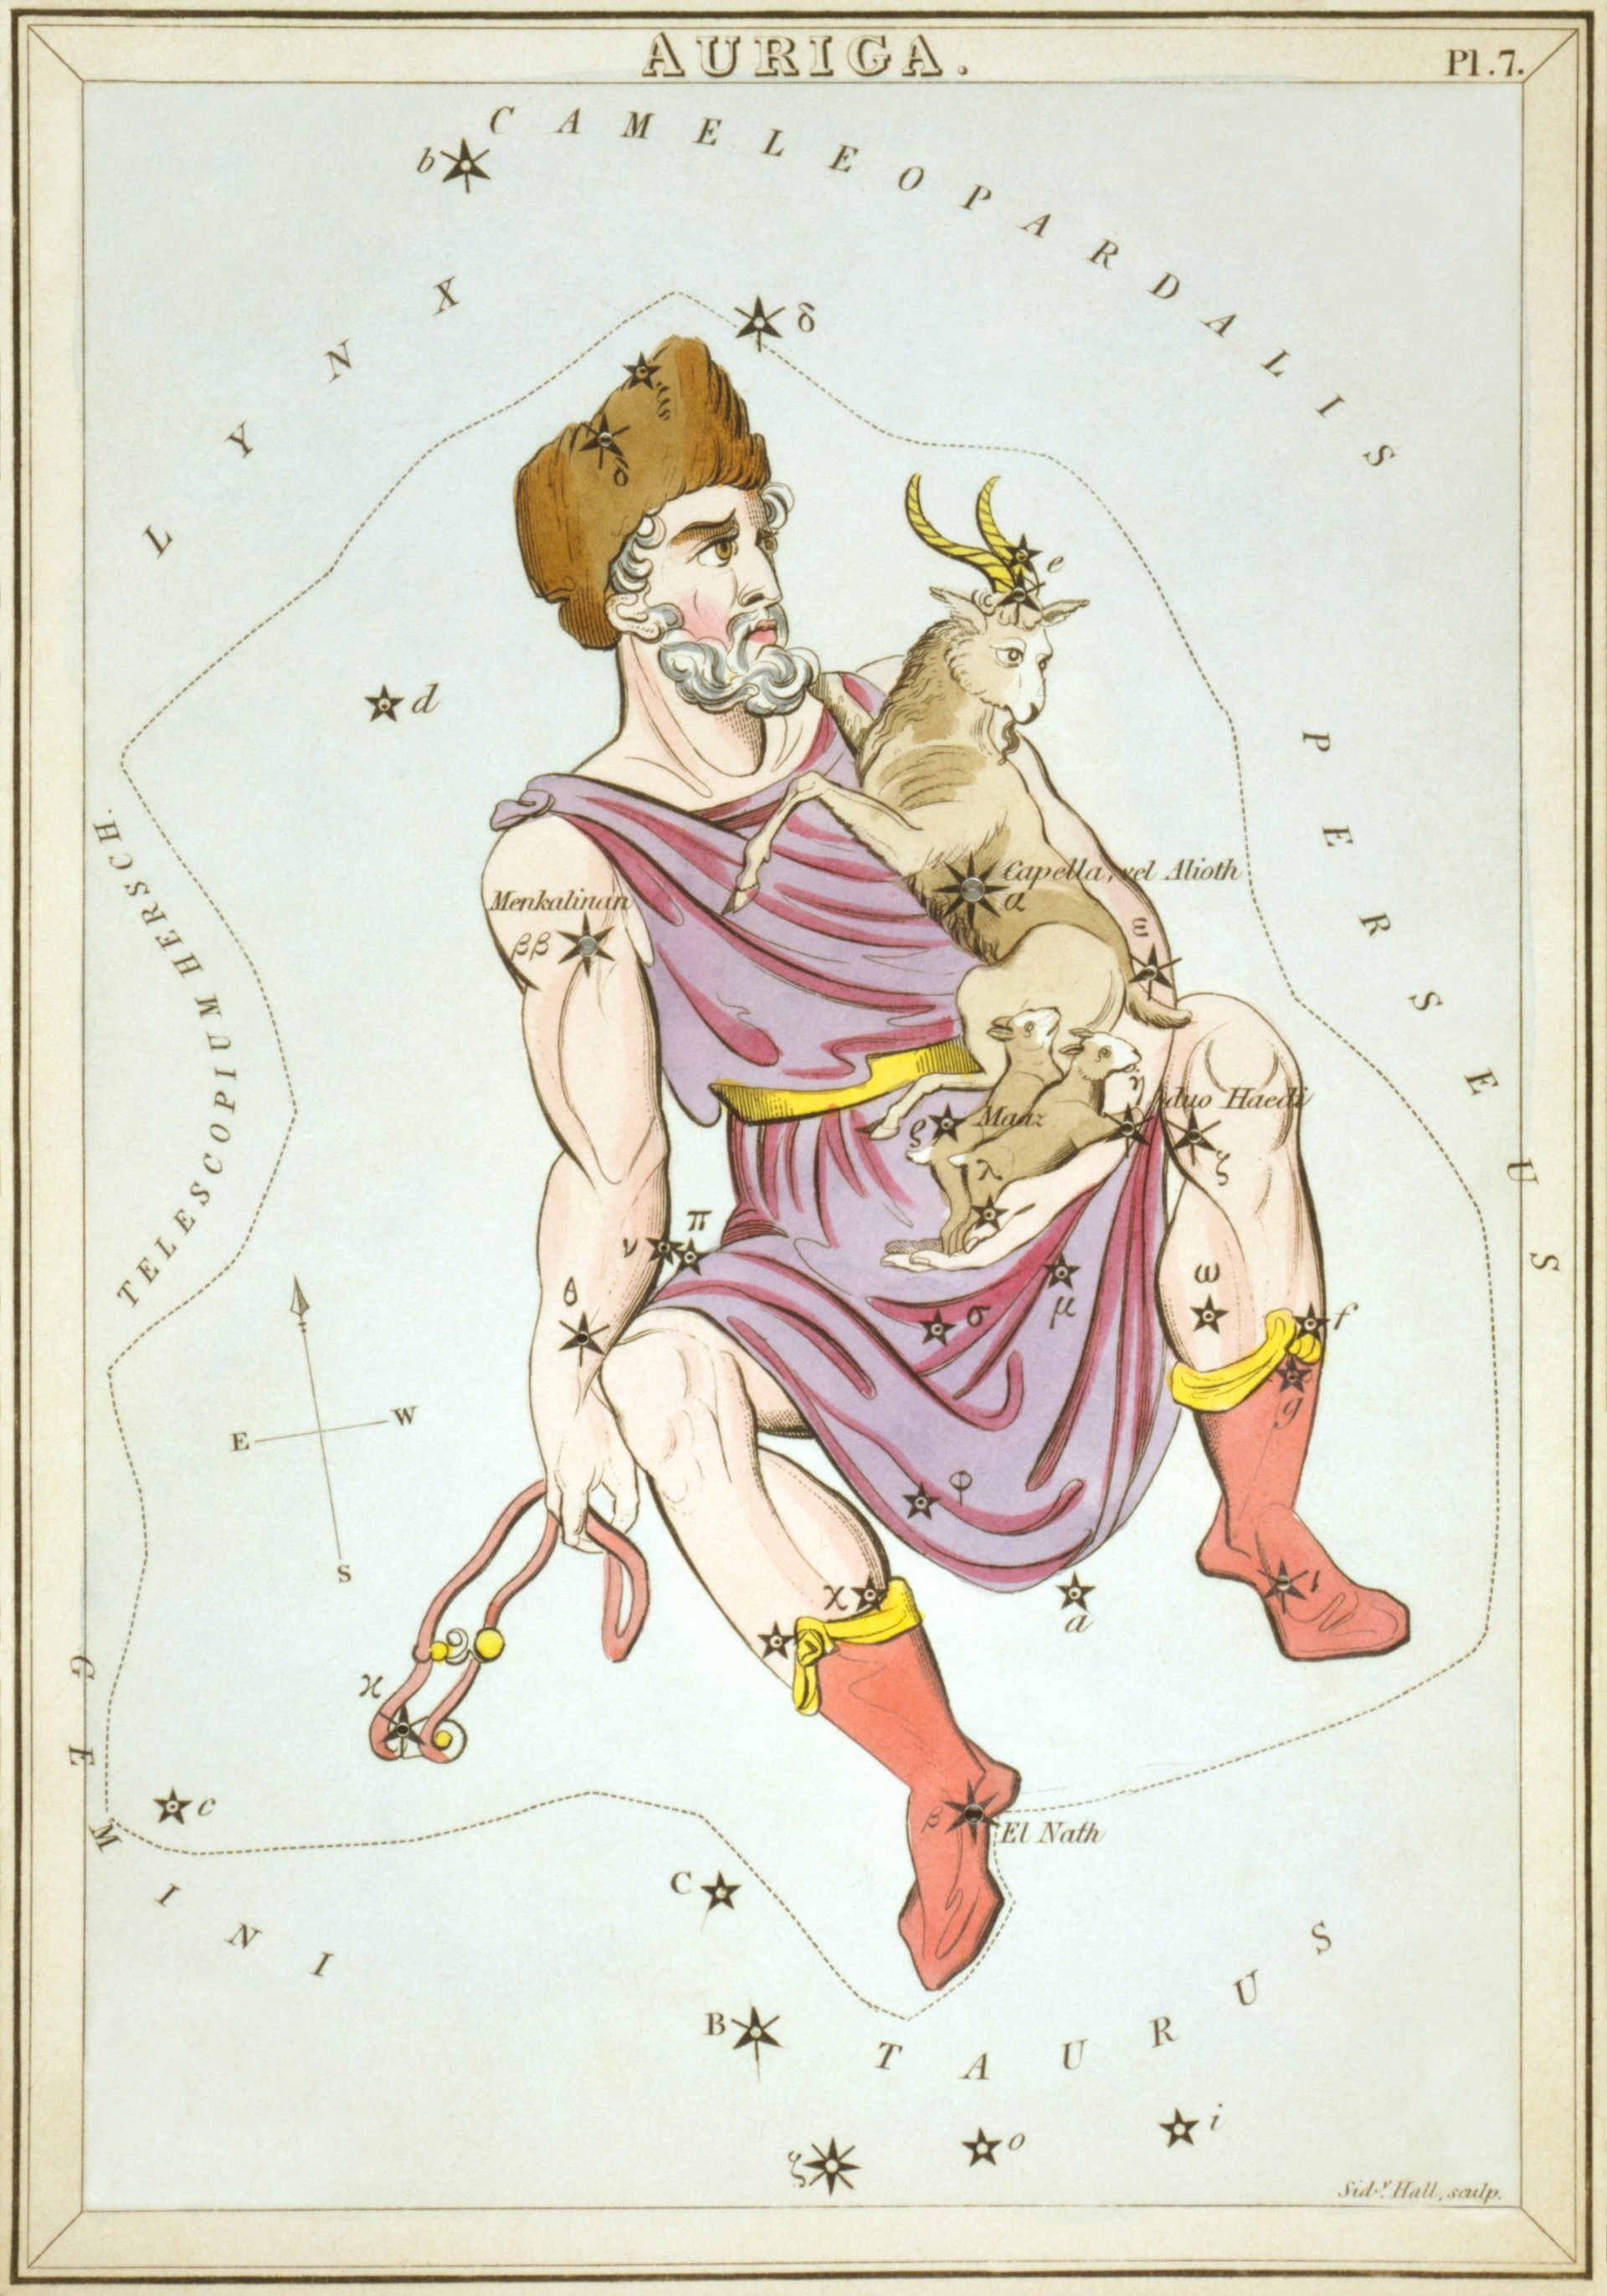 The constellation Auriga